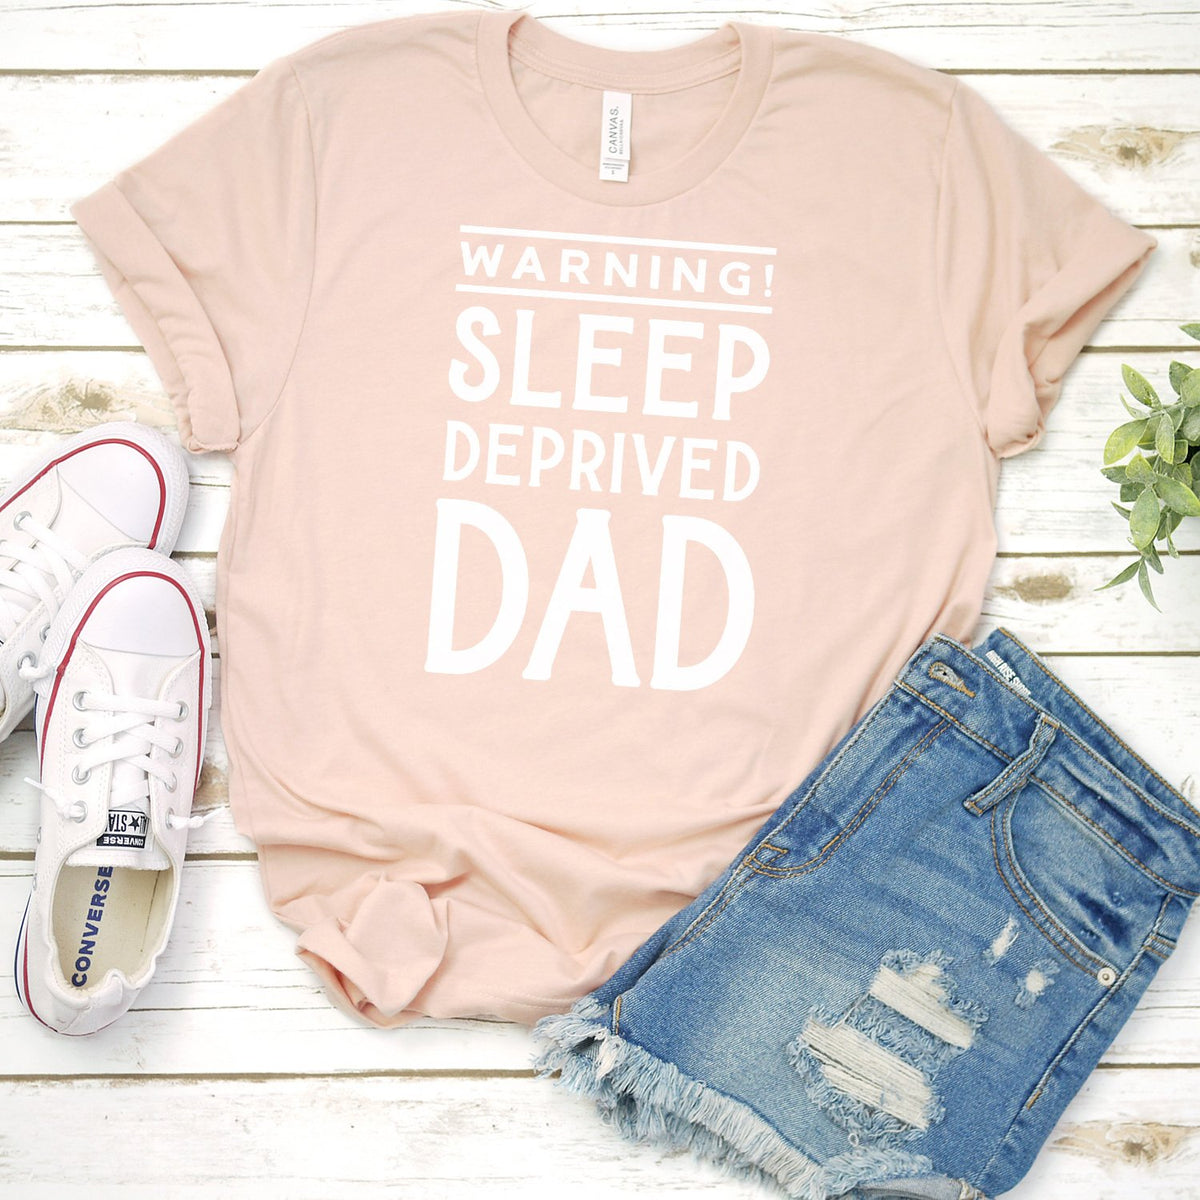 Warning! Sleep Deprived Dad - Short Sleeve Tee Shirt